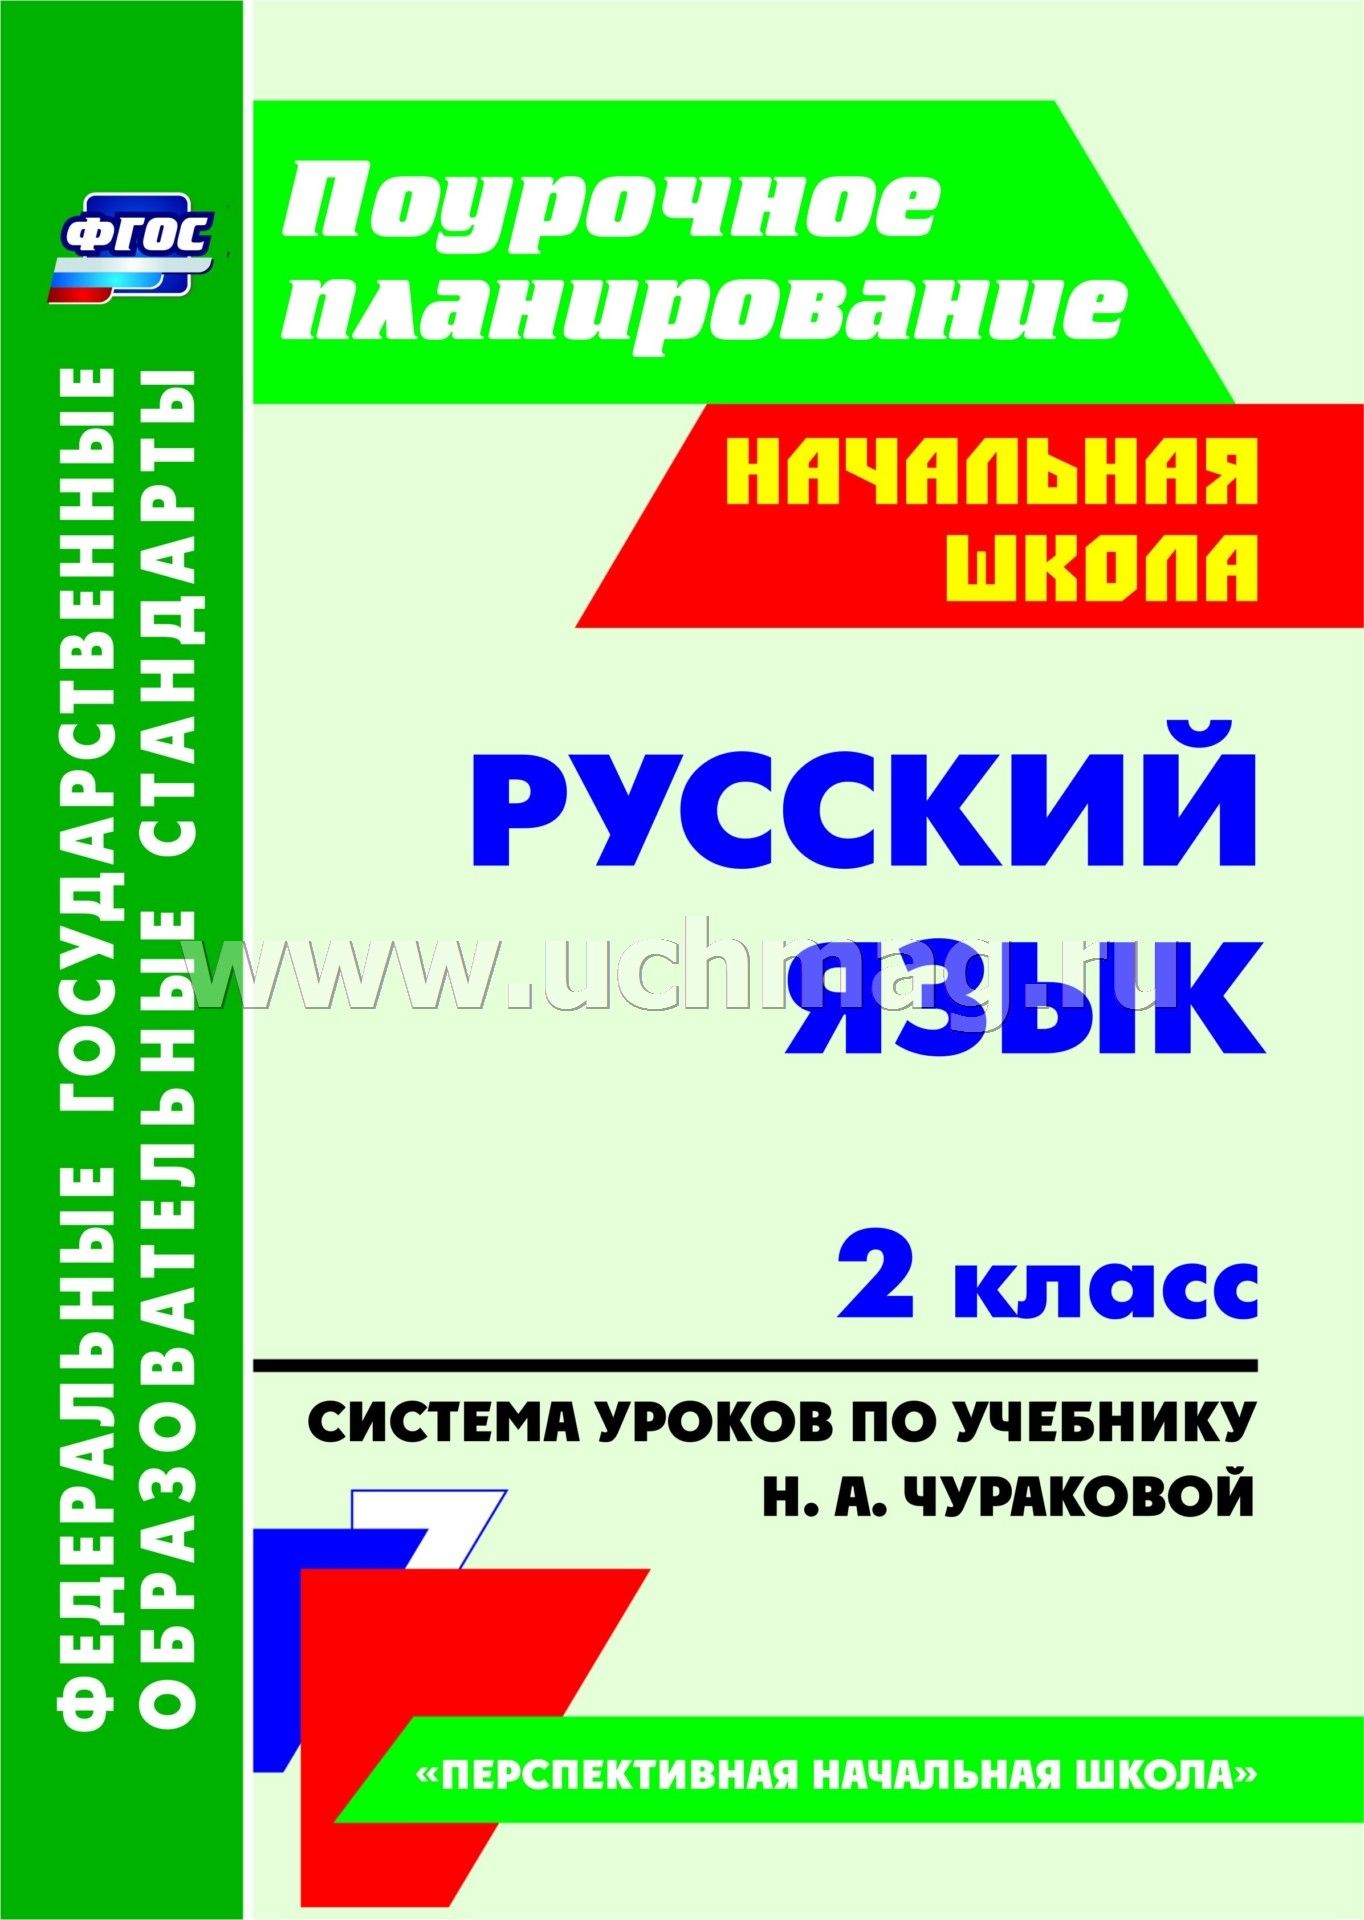 Русский язык 2класс готовые домашняя работа чуракова